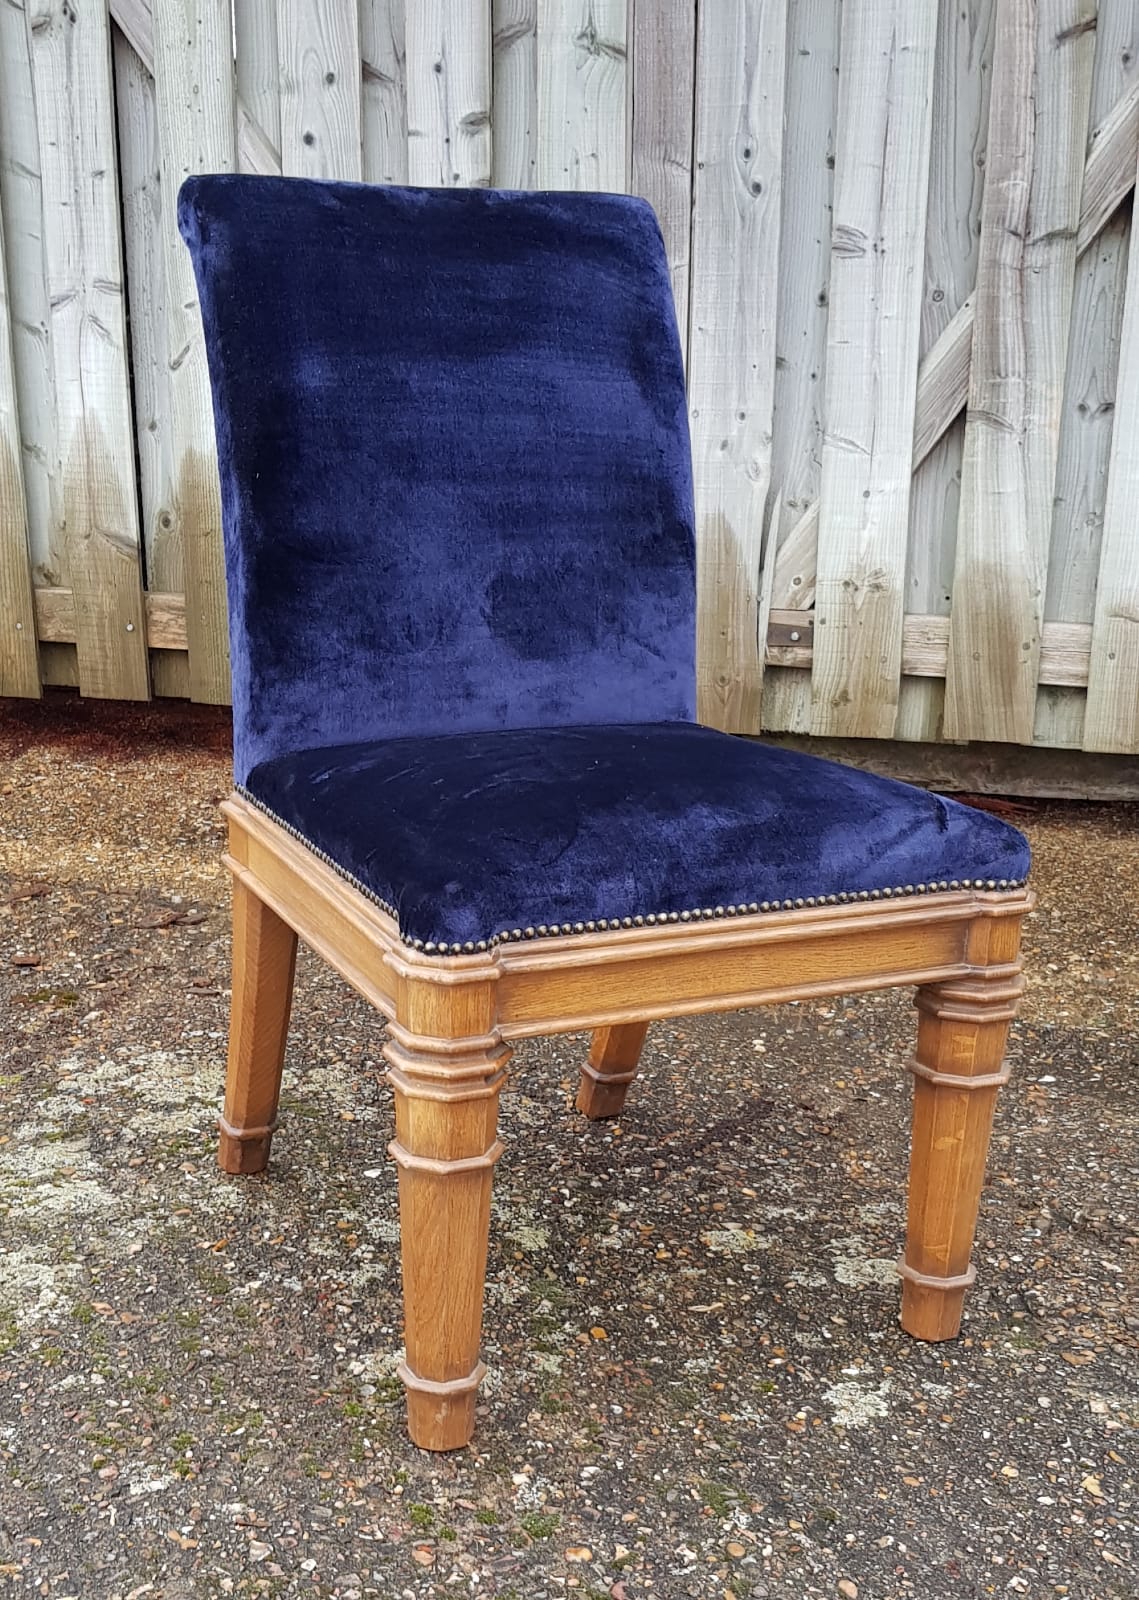 Augustus Pugin Chair in Velvet